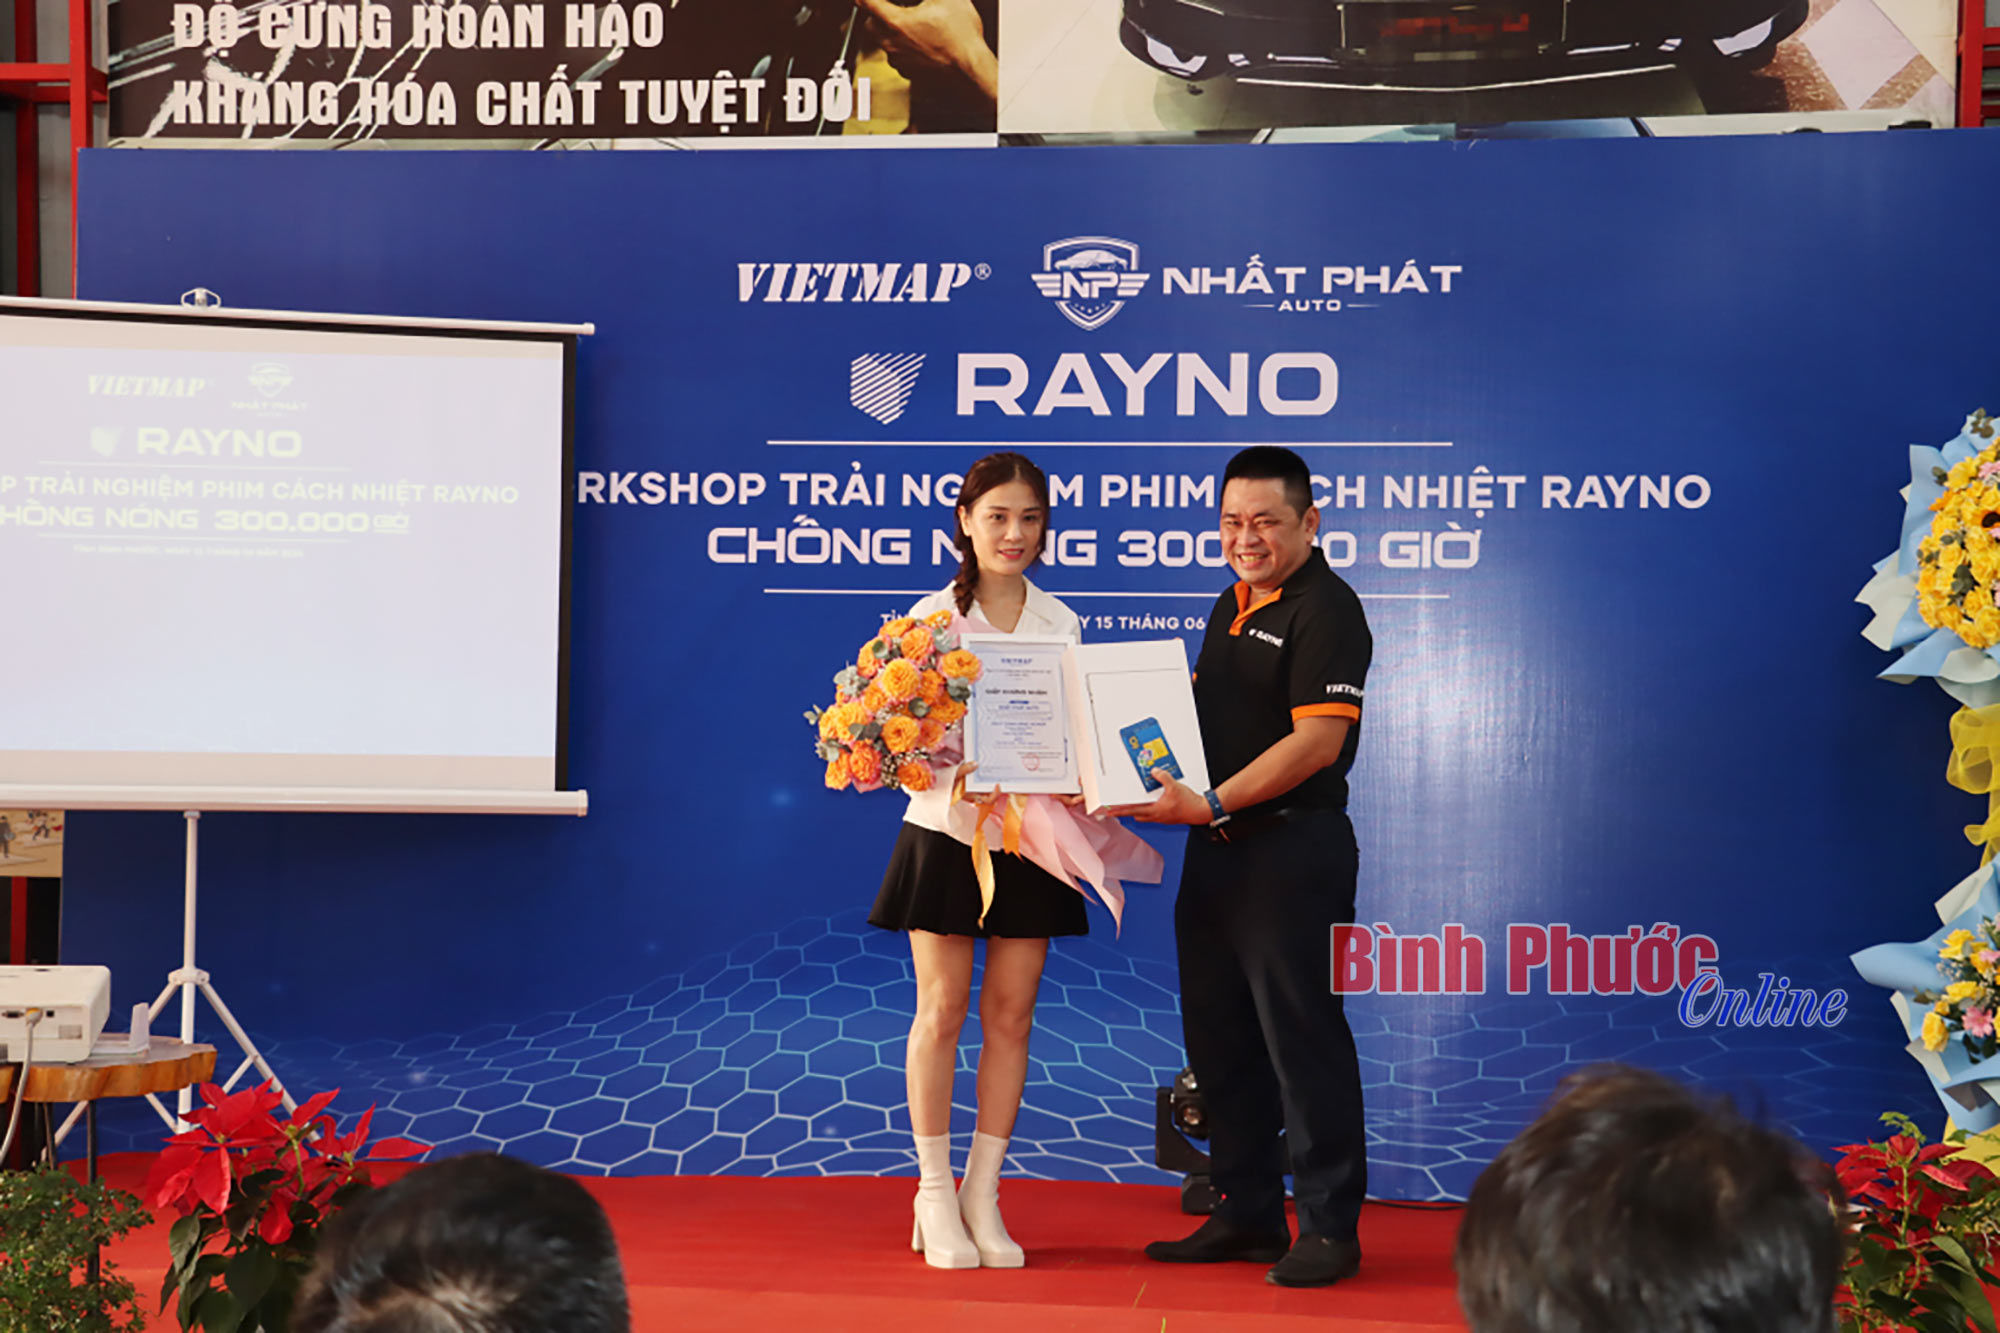 Nhất Phát Auto trở thành đại lý chính hãng của Vietmap về chăm sóc ô tô tại Bình Phước